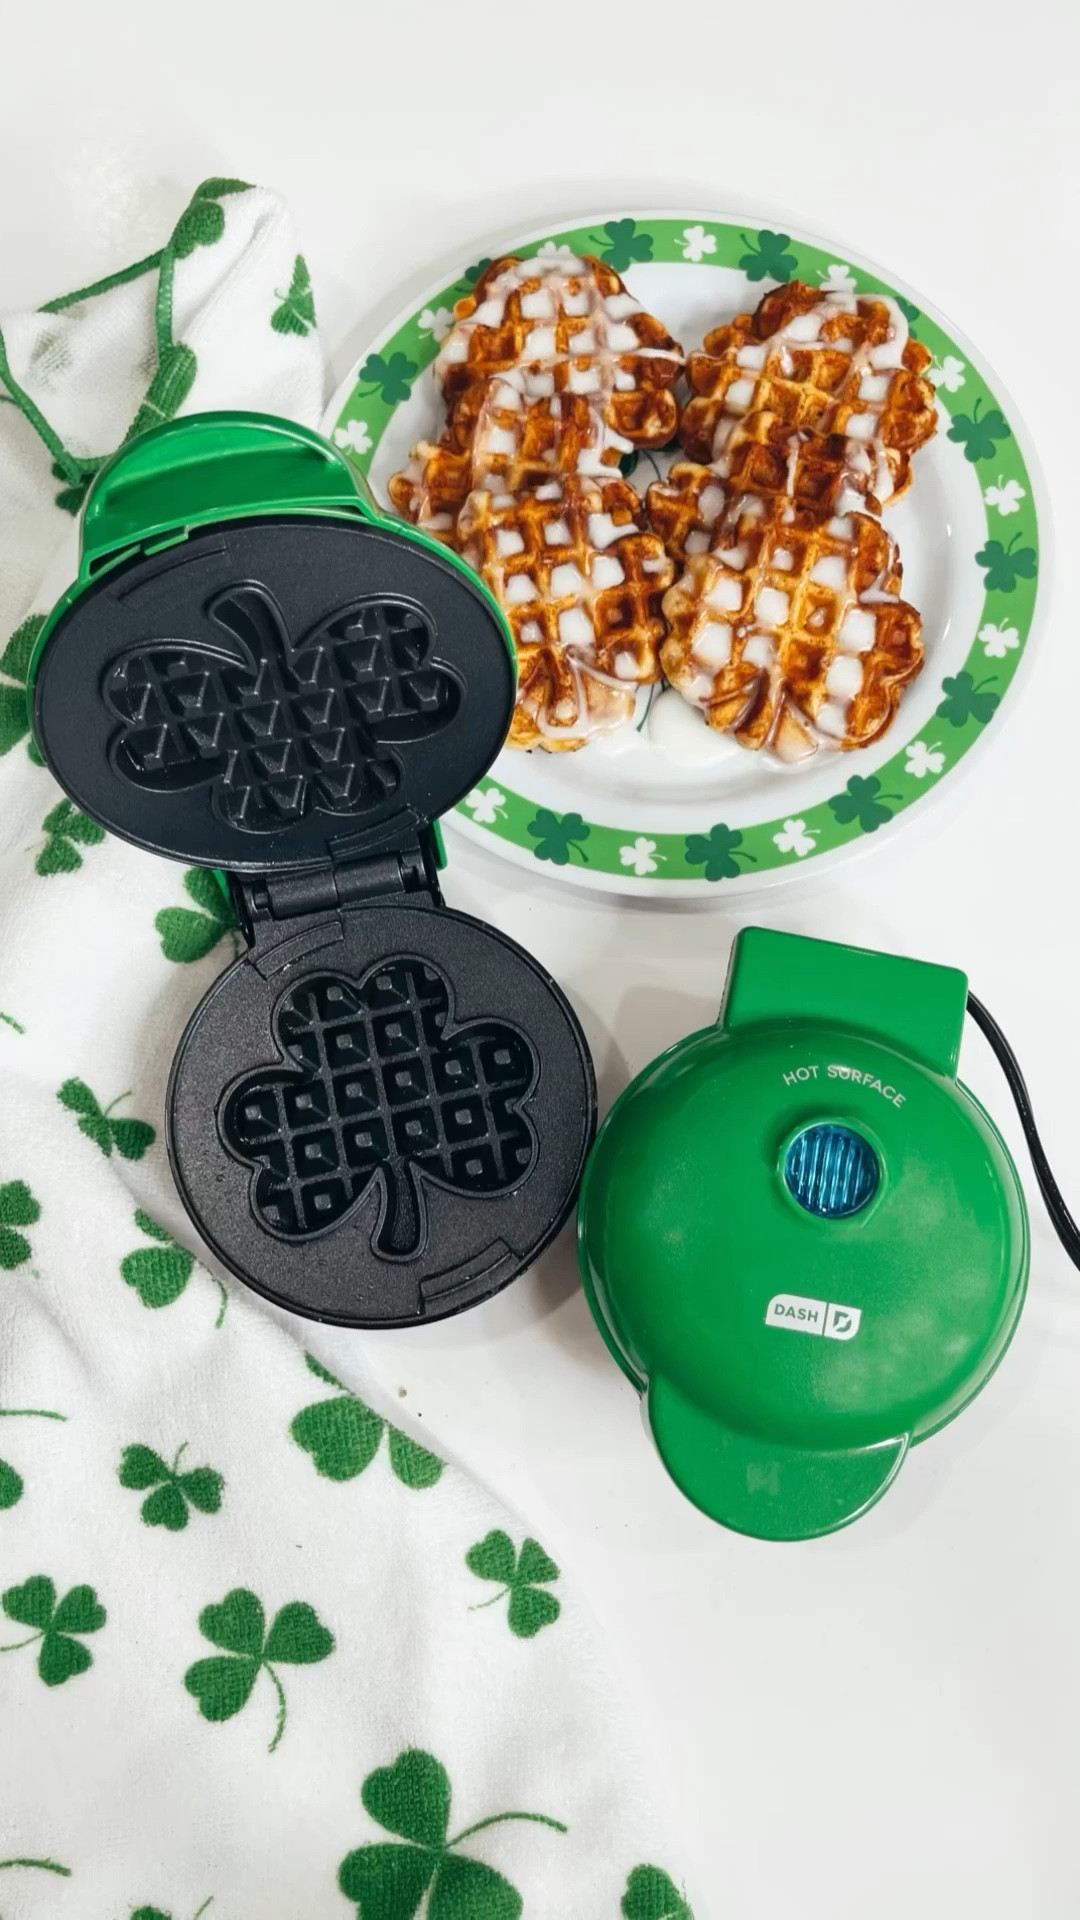 Dash Shamrock Mini Waffle Maker, Green